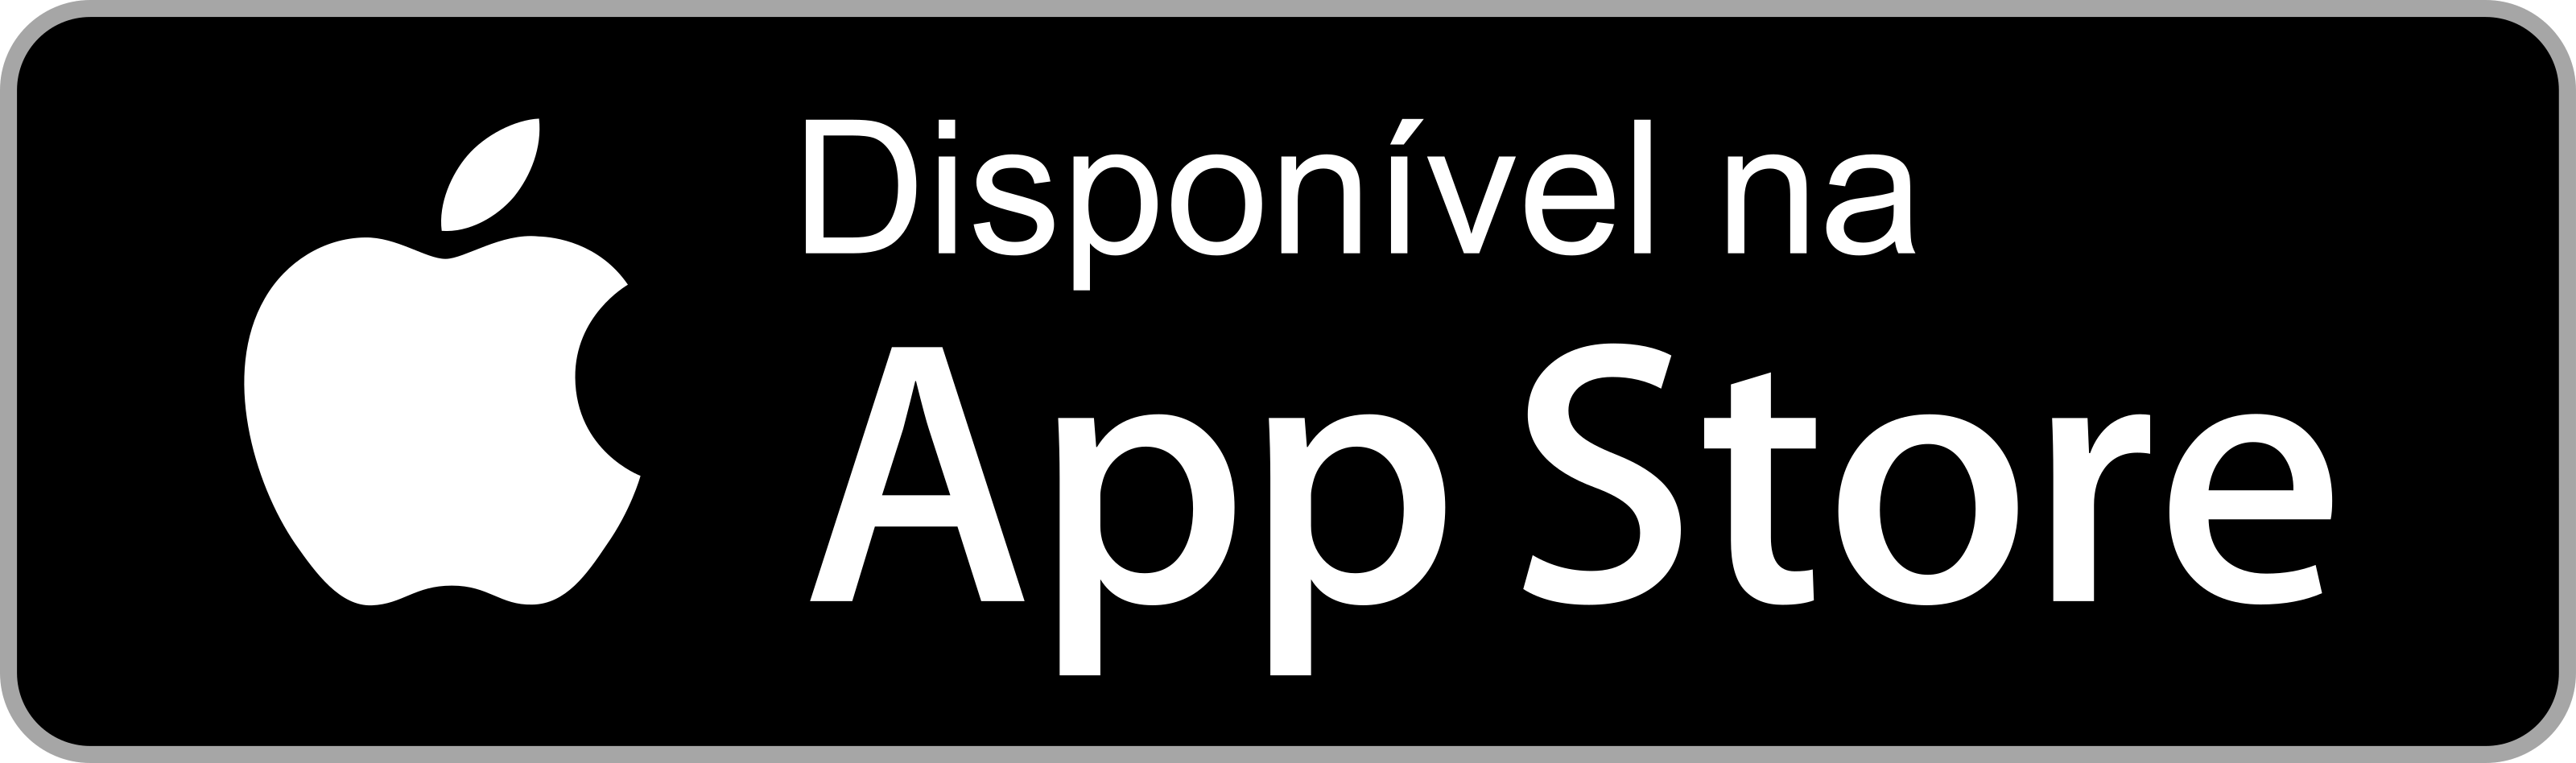 Descarregue na App Store